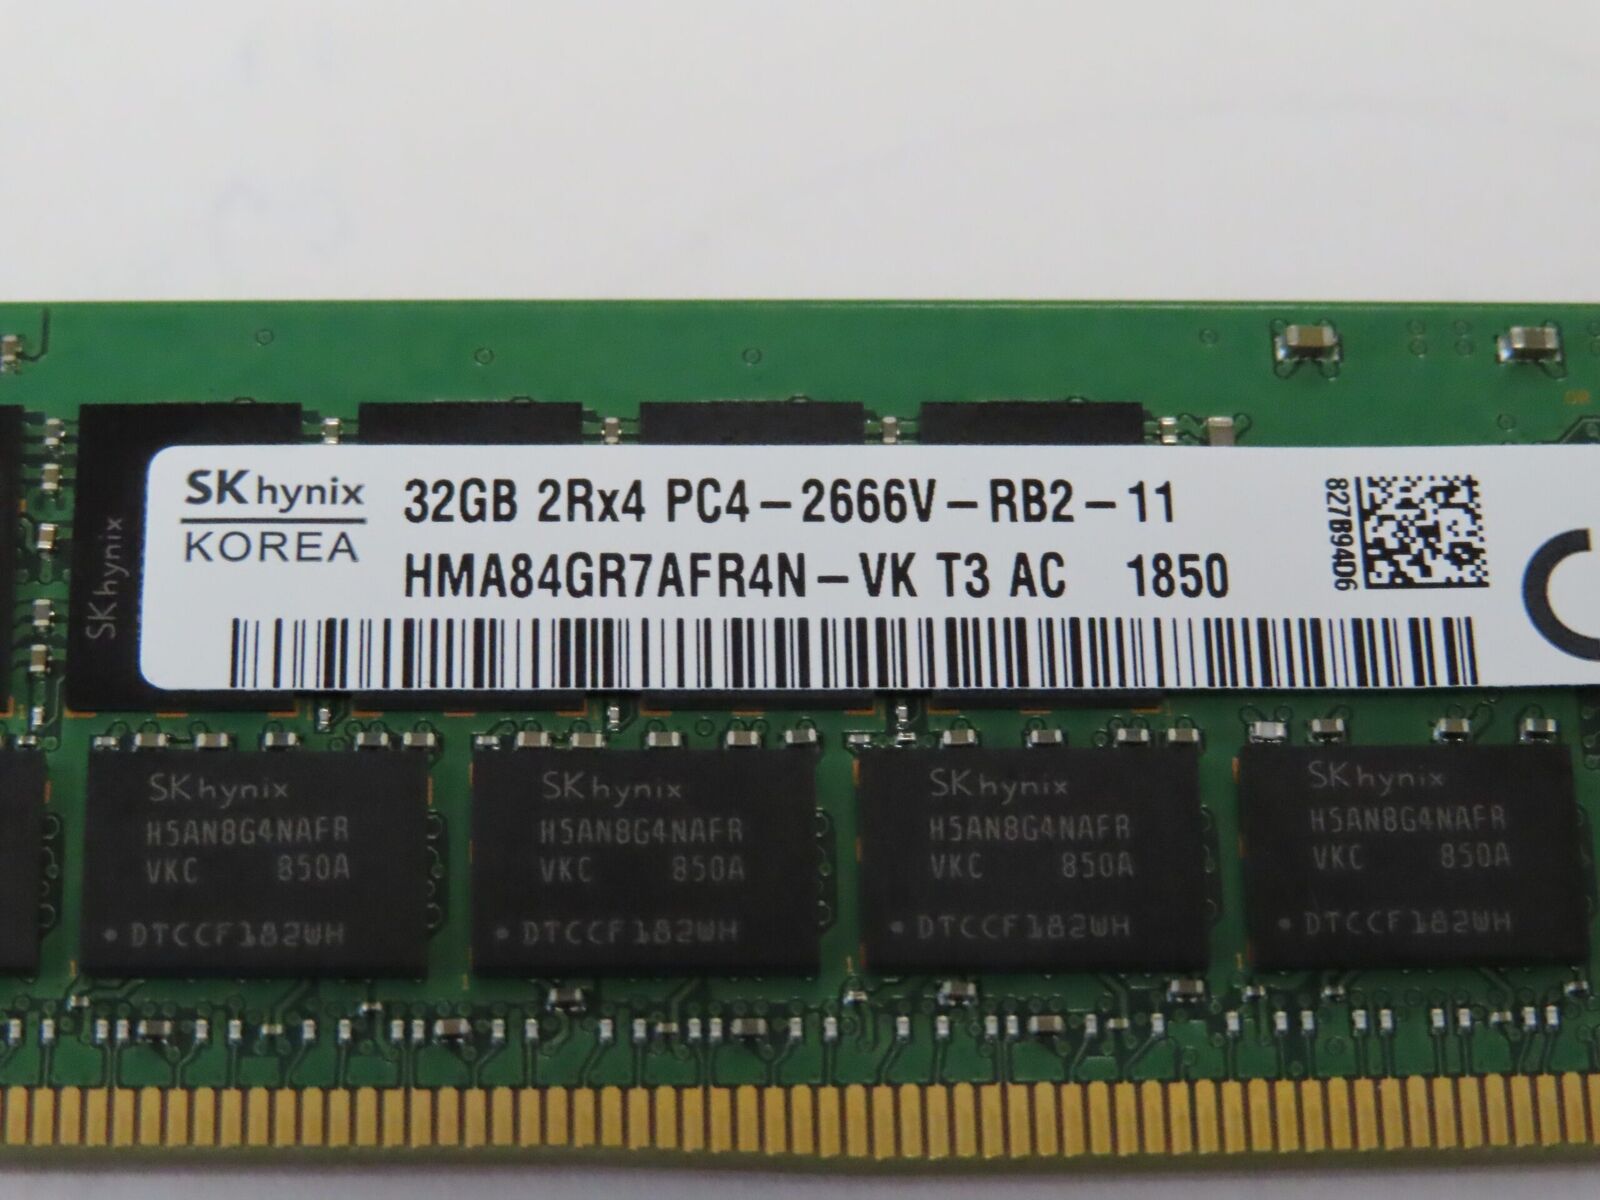 768GB = 24x 32GB 2Rx4 2666V Dell Poweredge R630 R640 R730 R740 ECC Server Memory